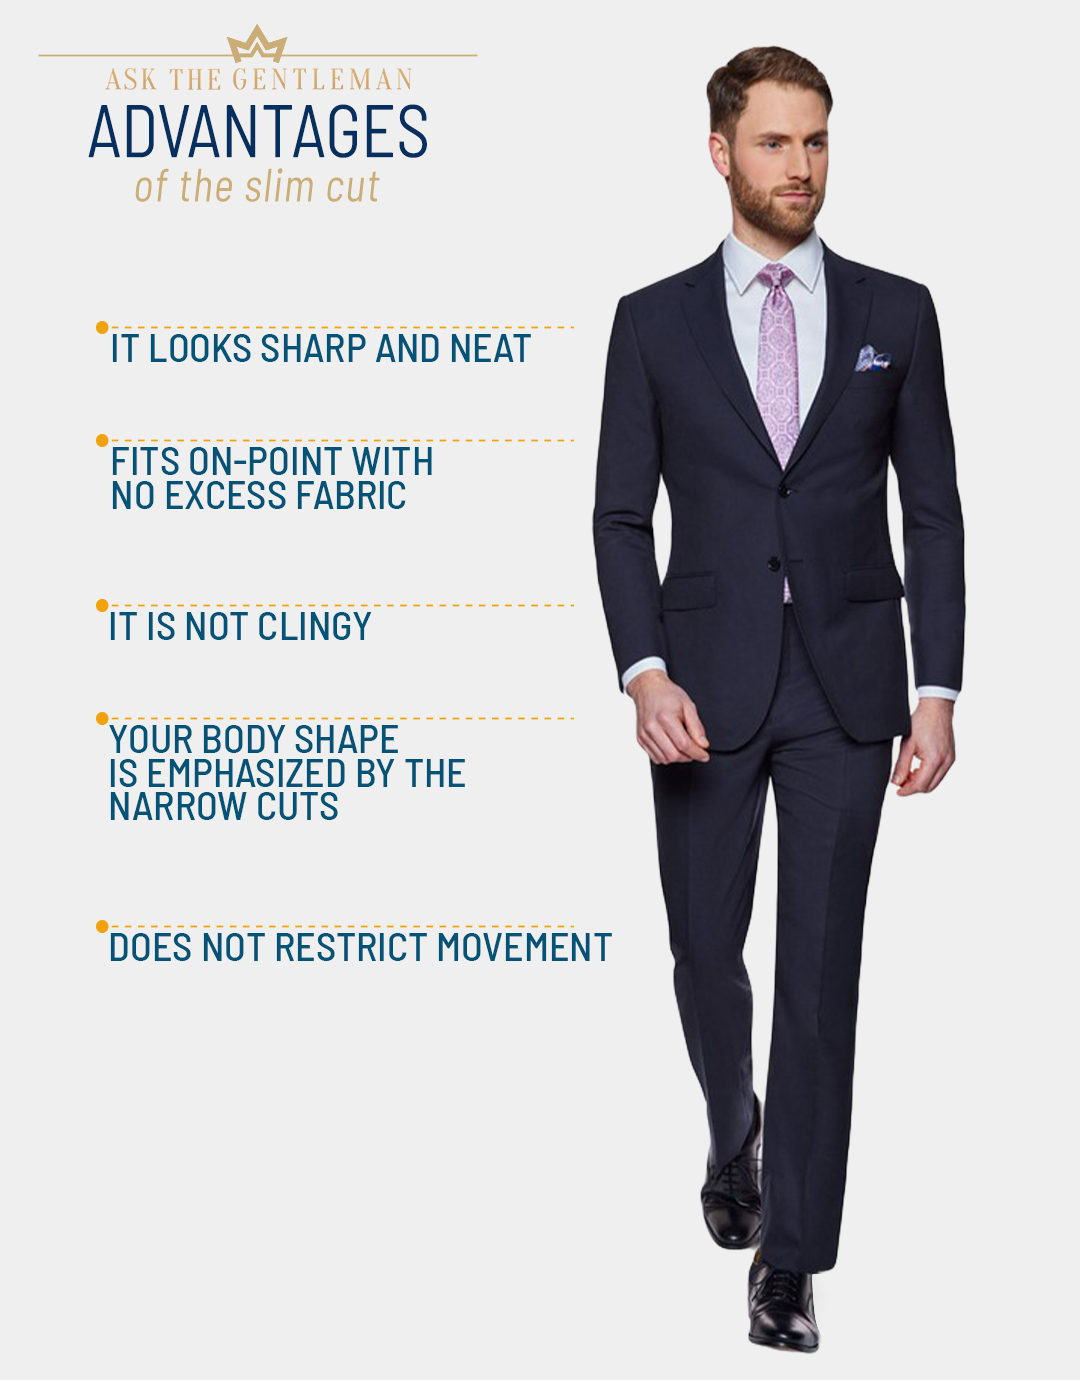 The advantages of a slim-fit suit cut